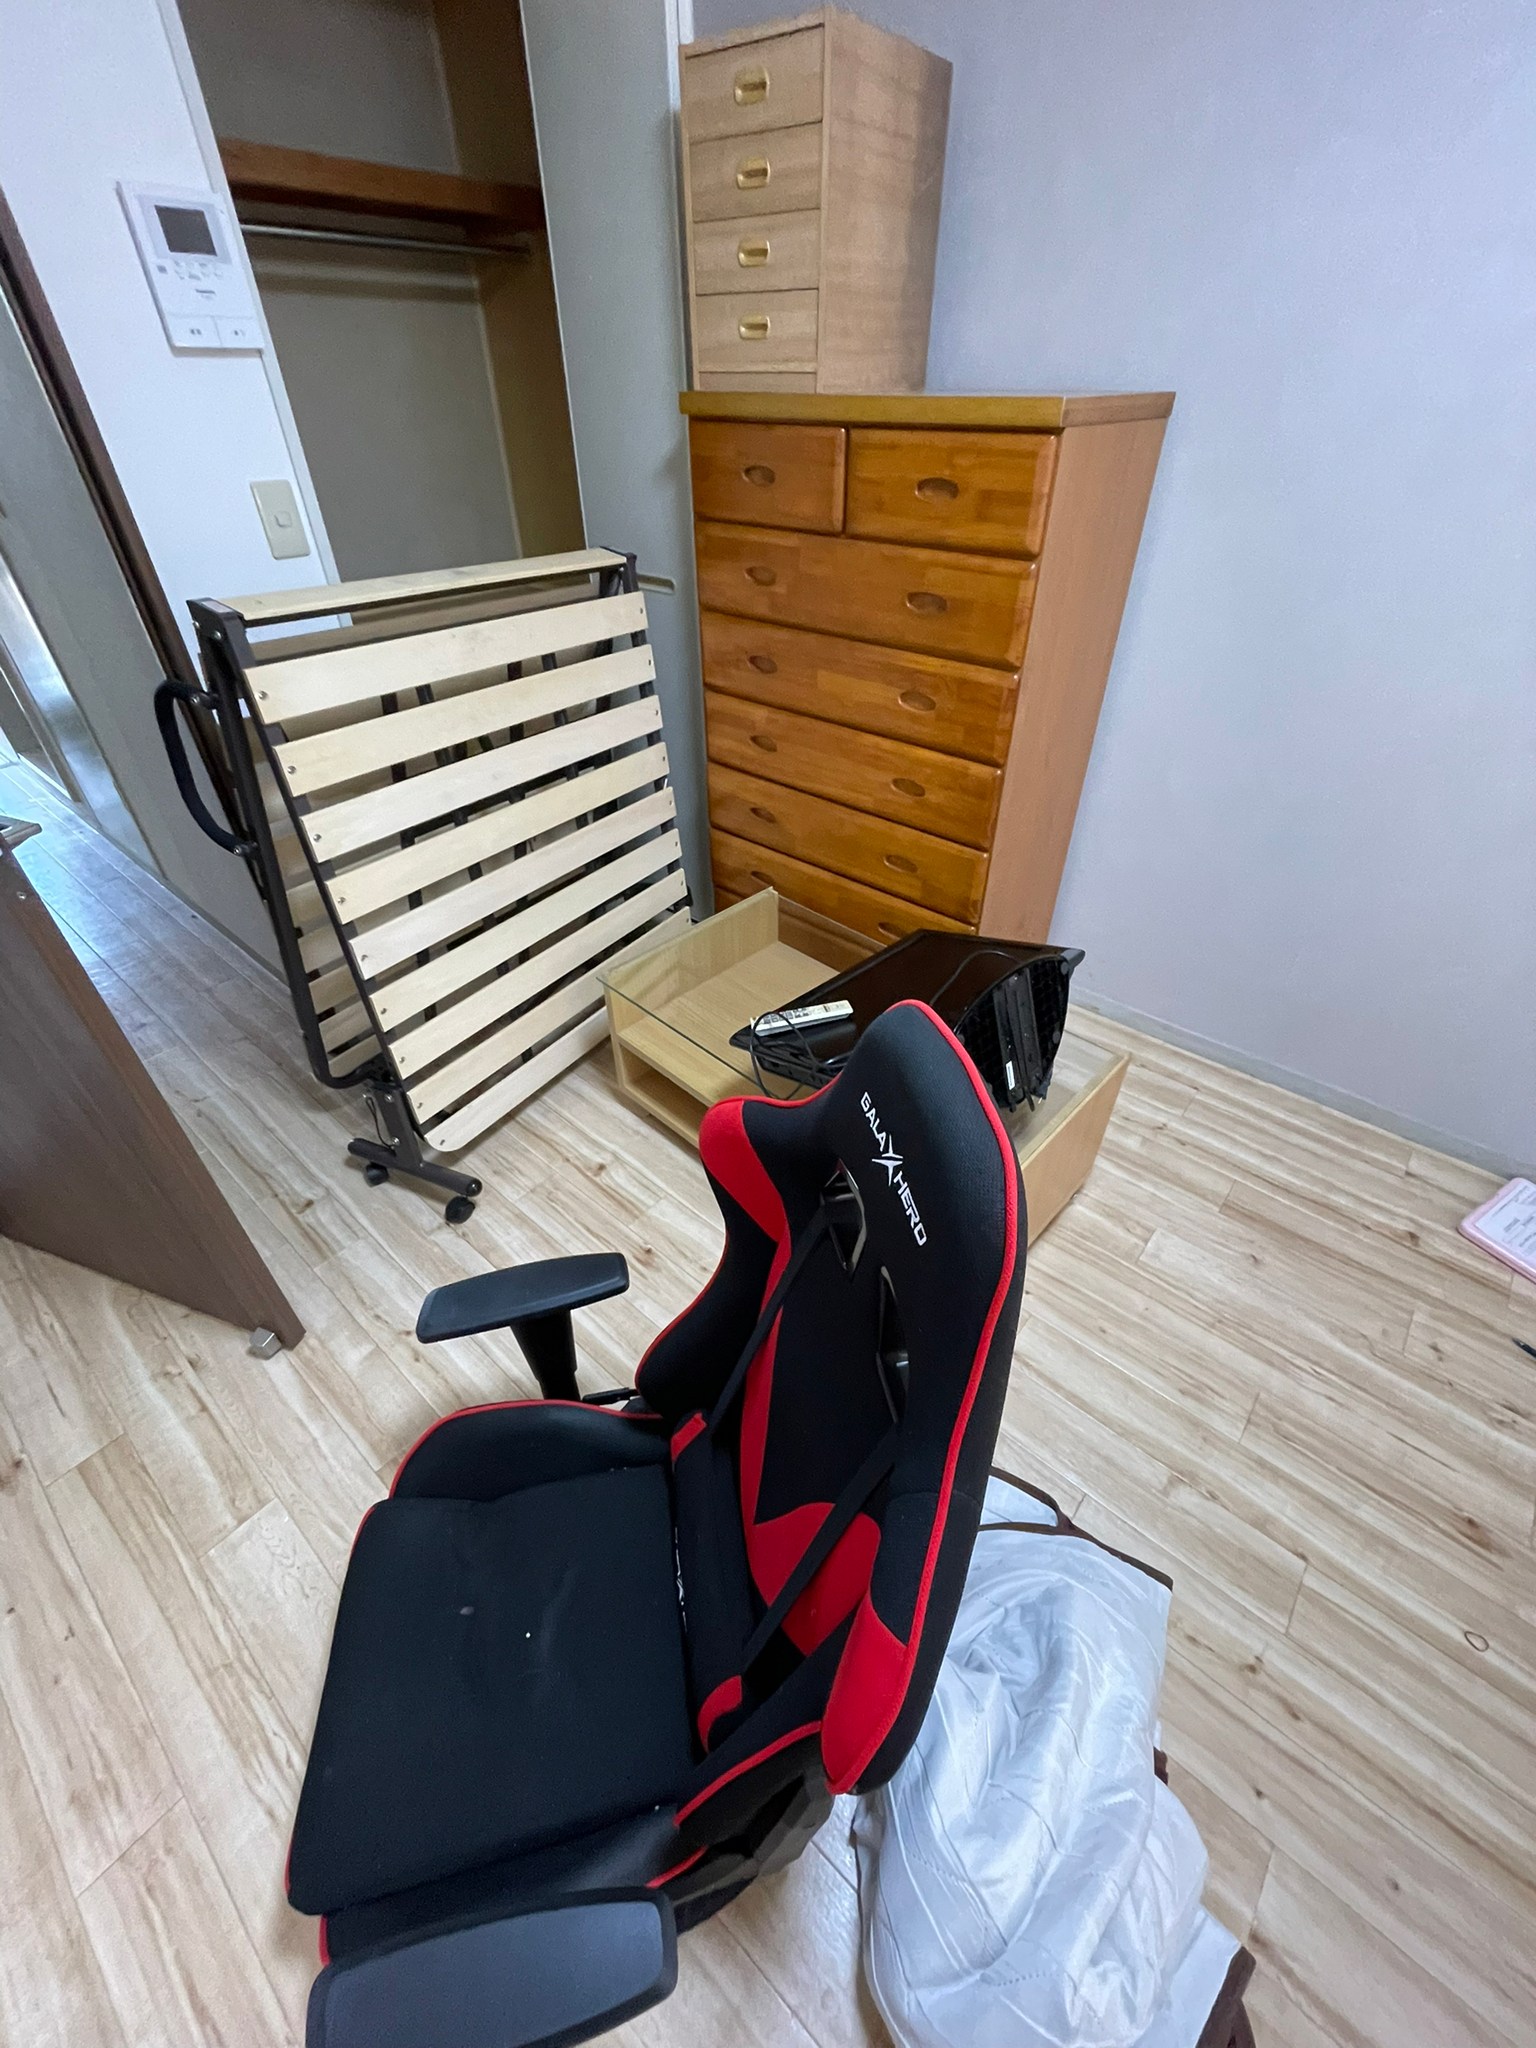 椅子、折り畳みベッド、机、タンス、棚の回収前の状態